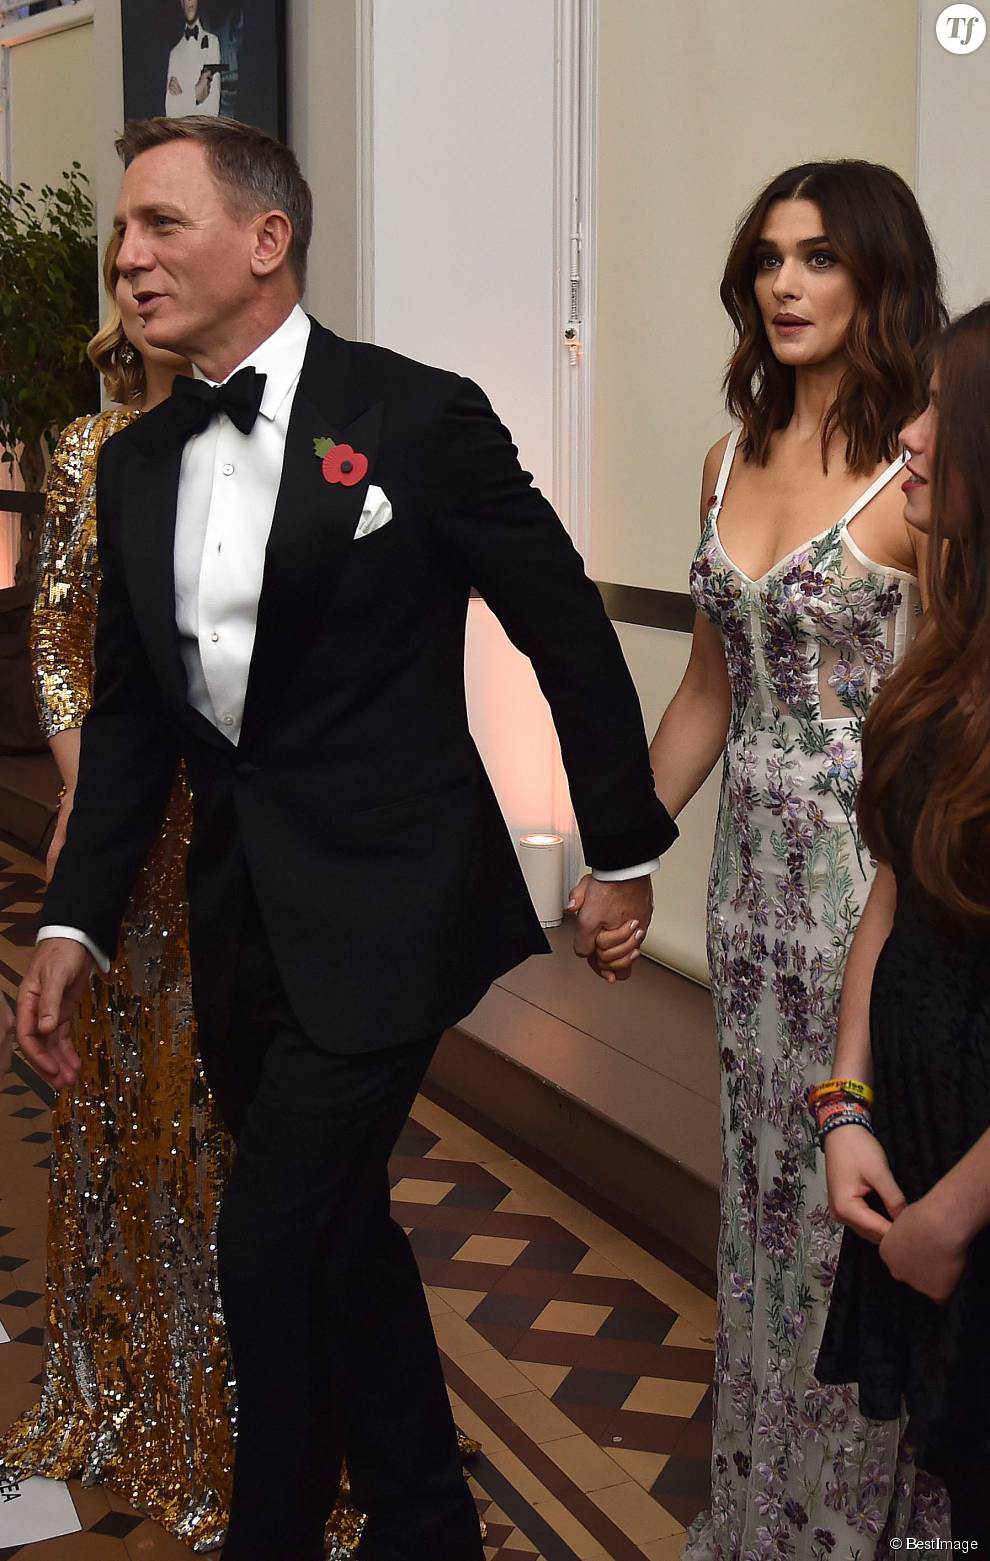  Daniel Craig et sa femme Rachel Weisz - Première mondiale du nouveau James Bond &quot;Spectre&quot; au Royal Albert Hall à Londres. Le 26 octobre 2015  